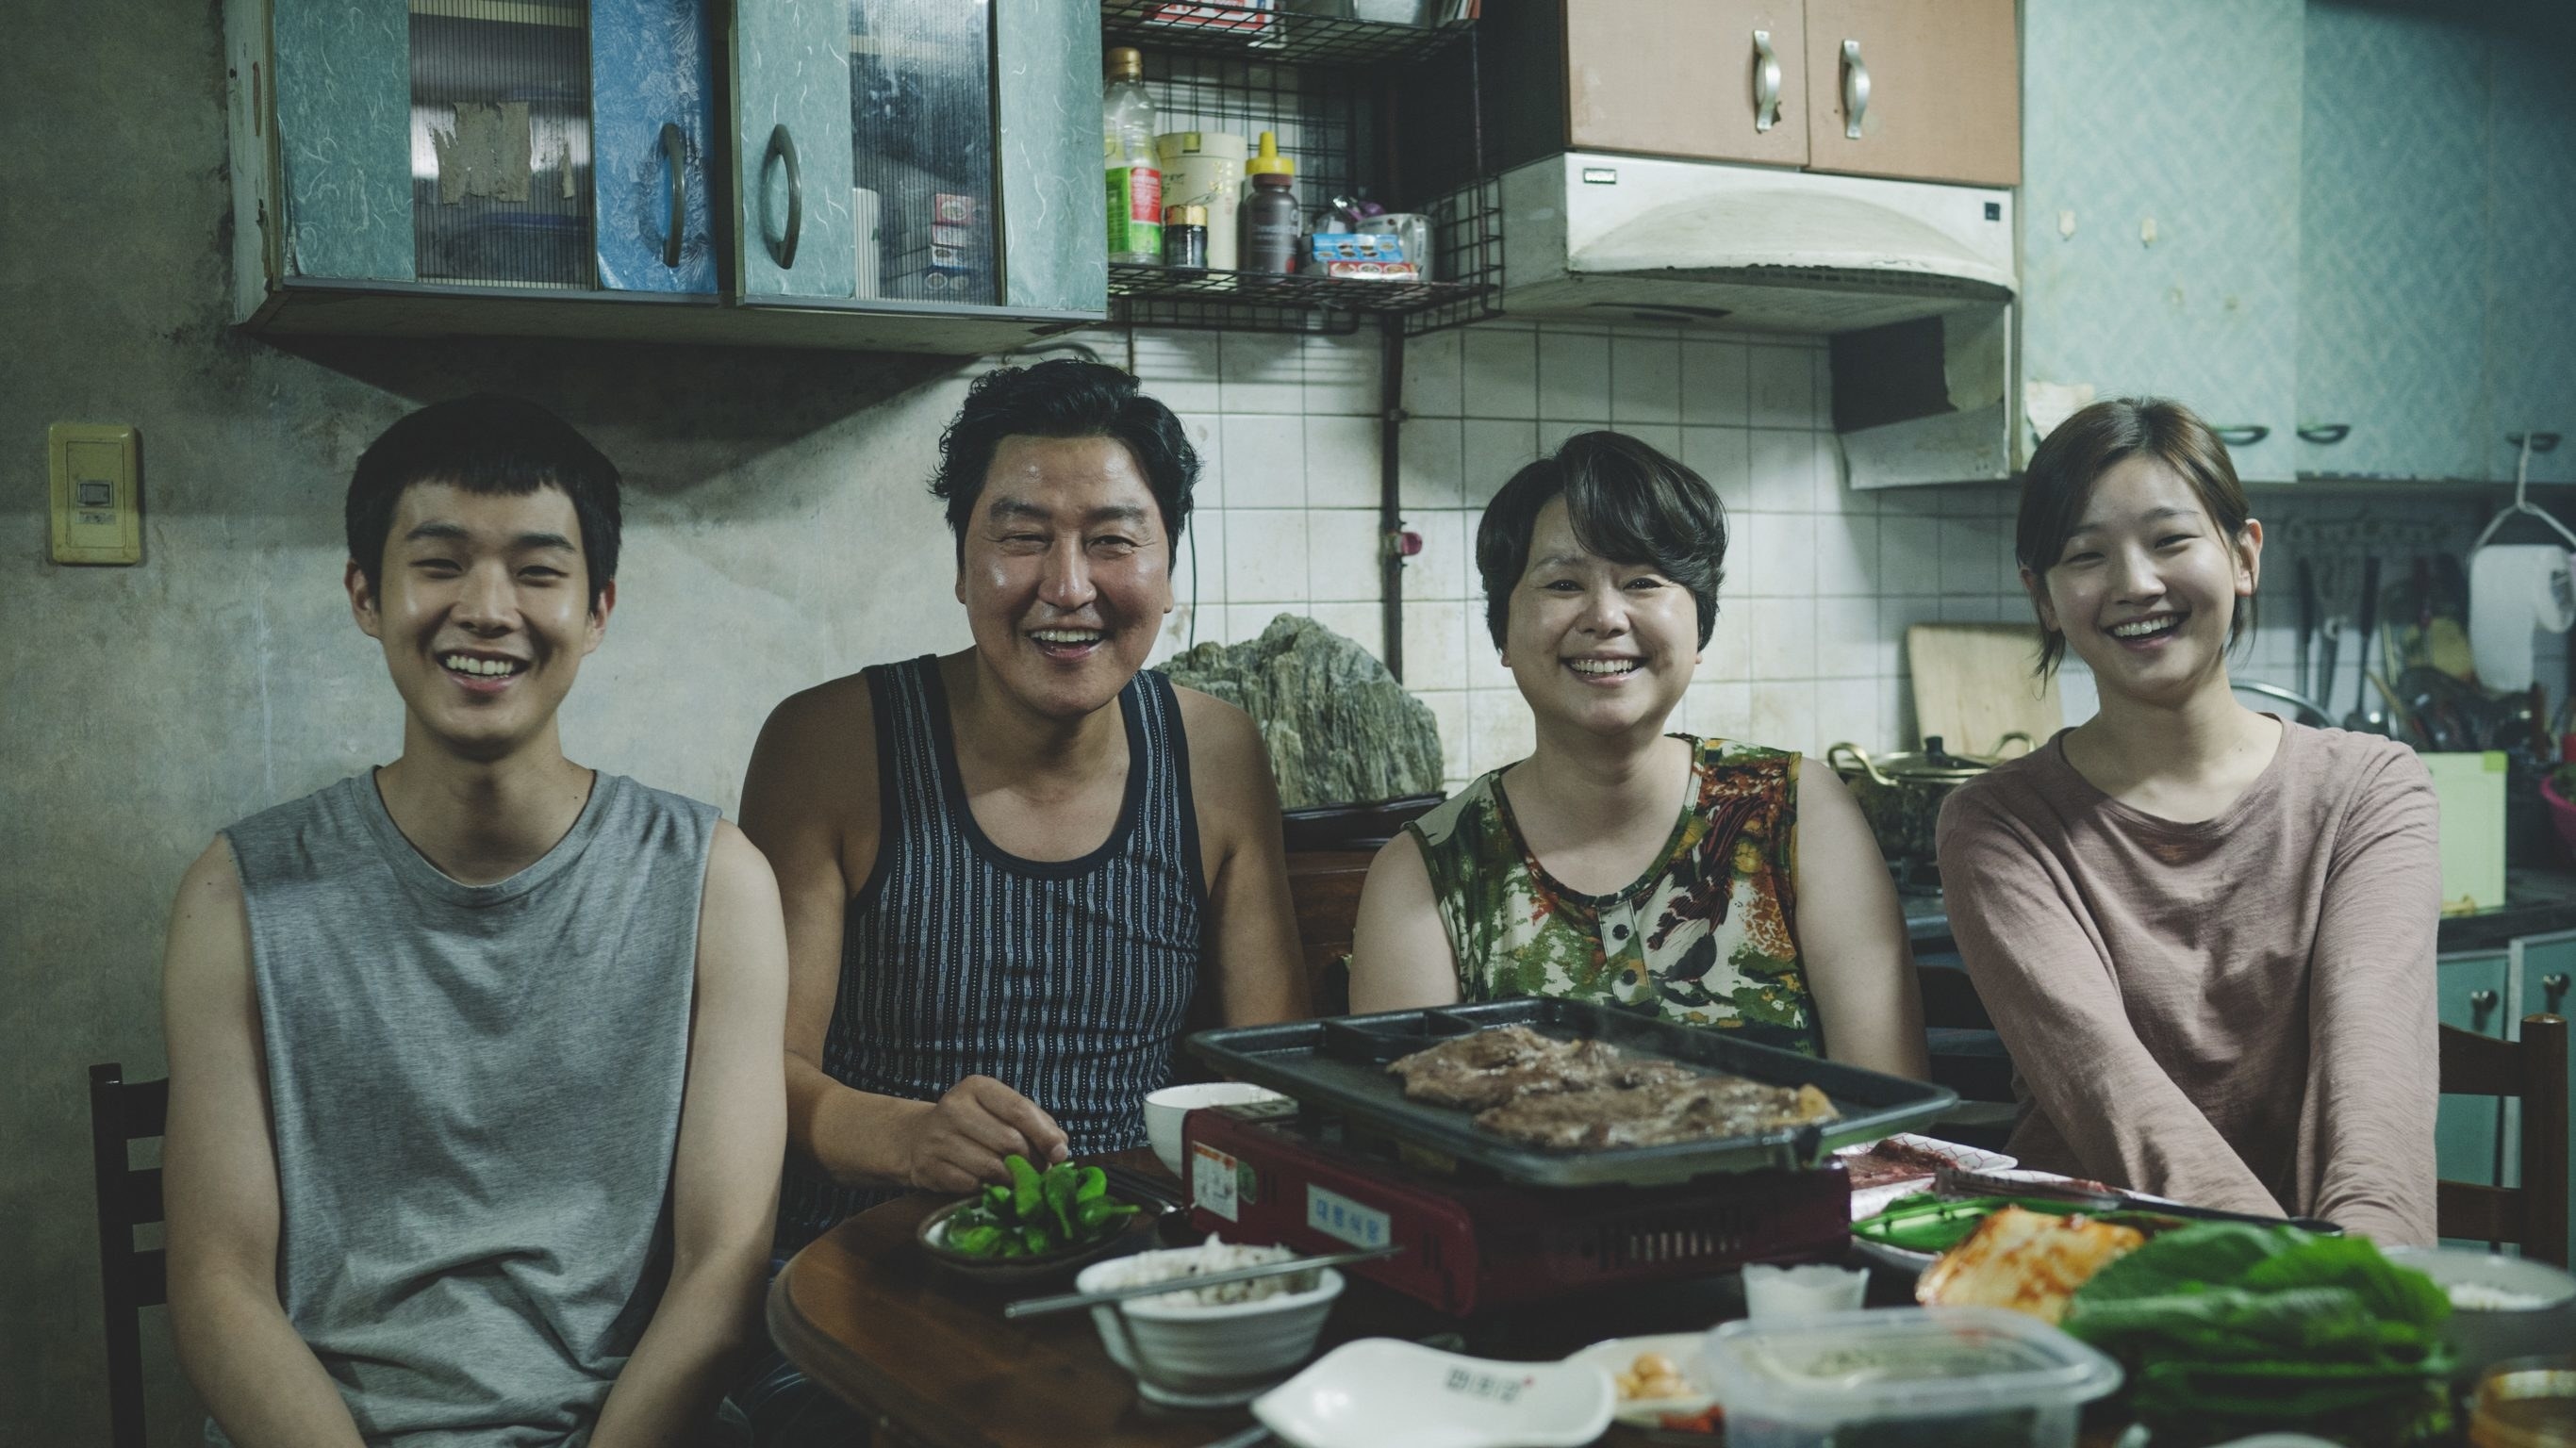 the kim family in their own kitchen